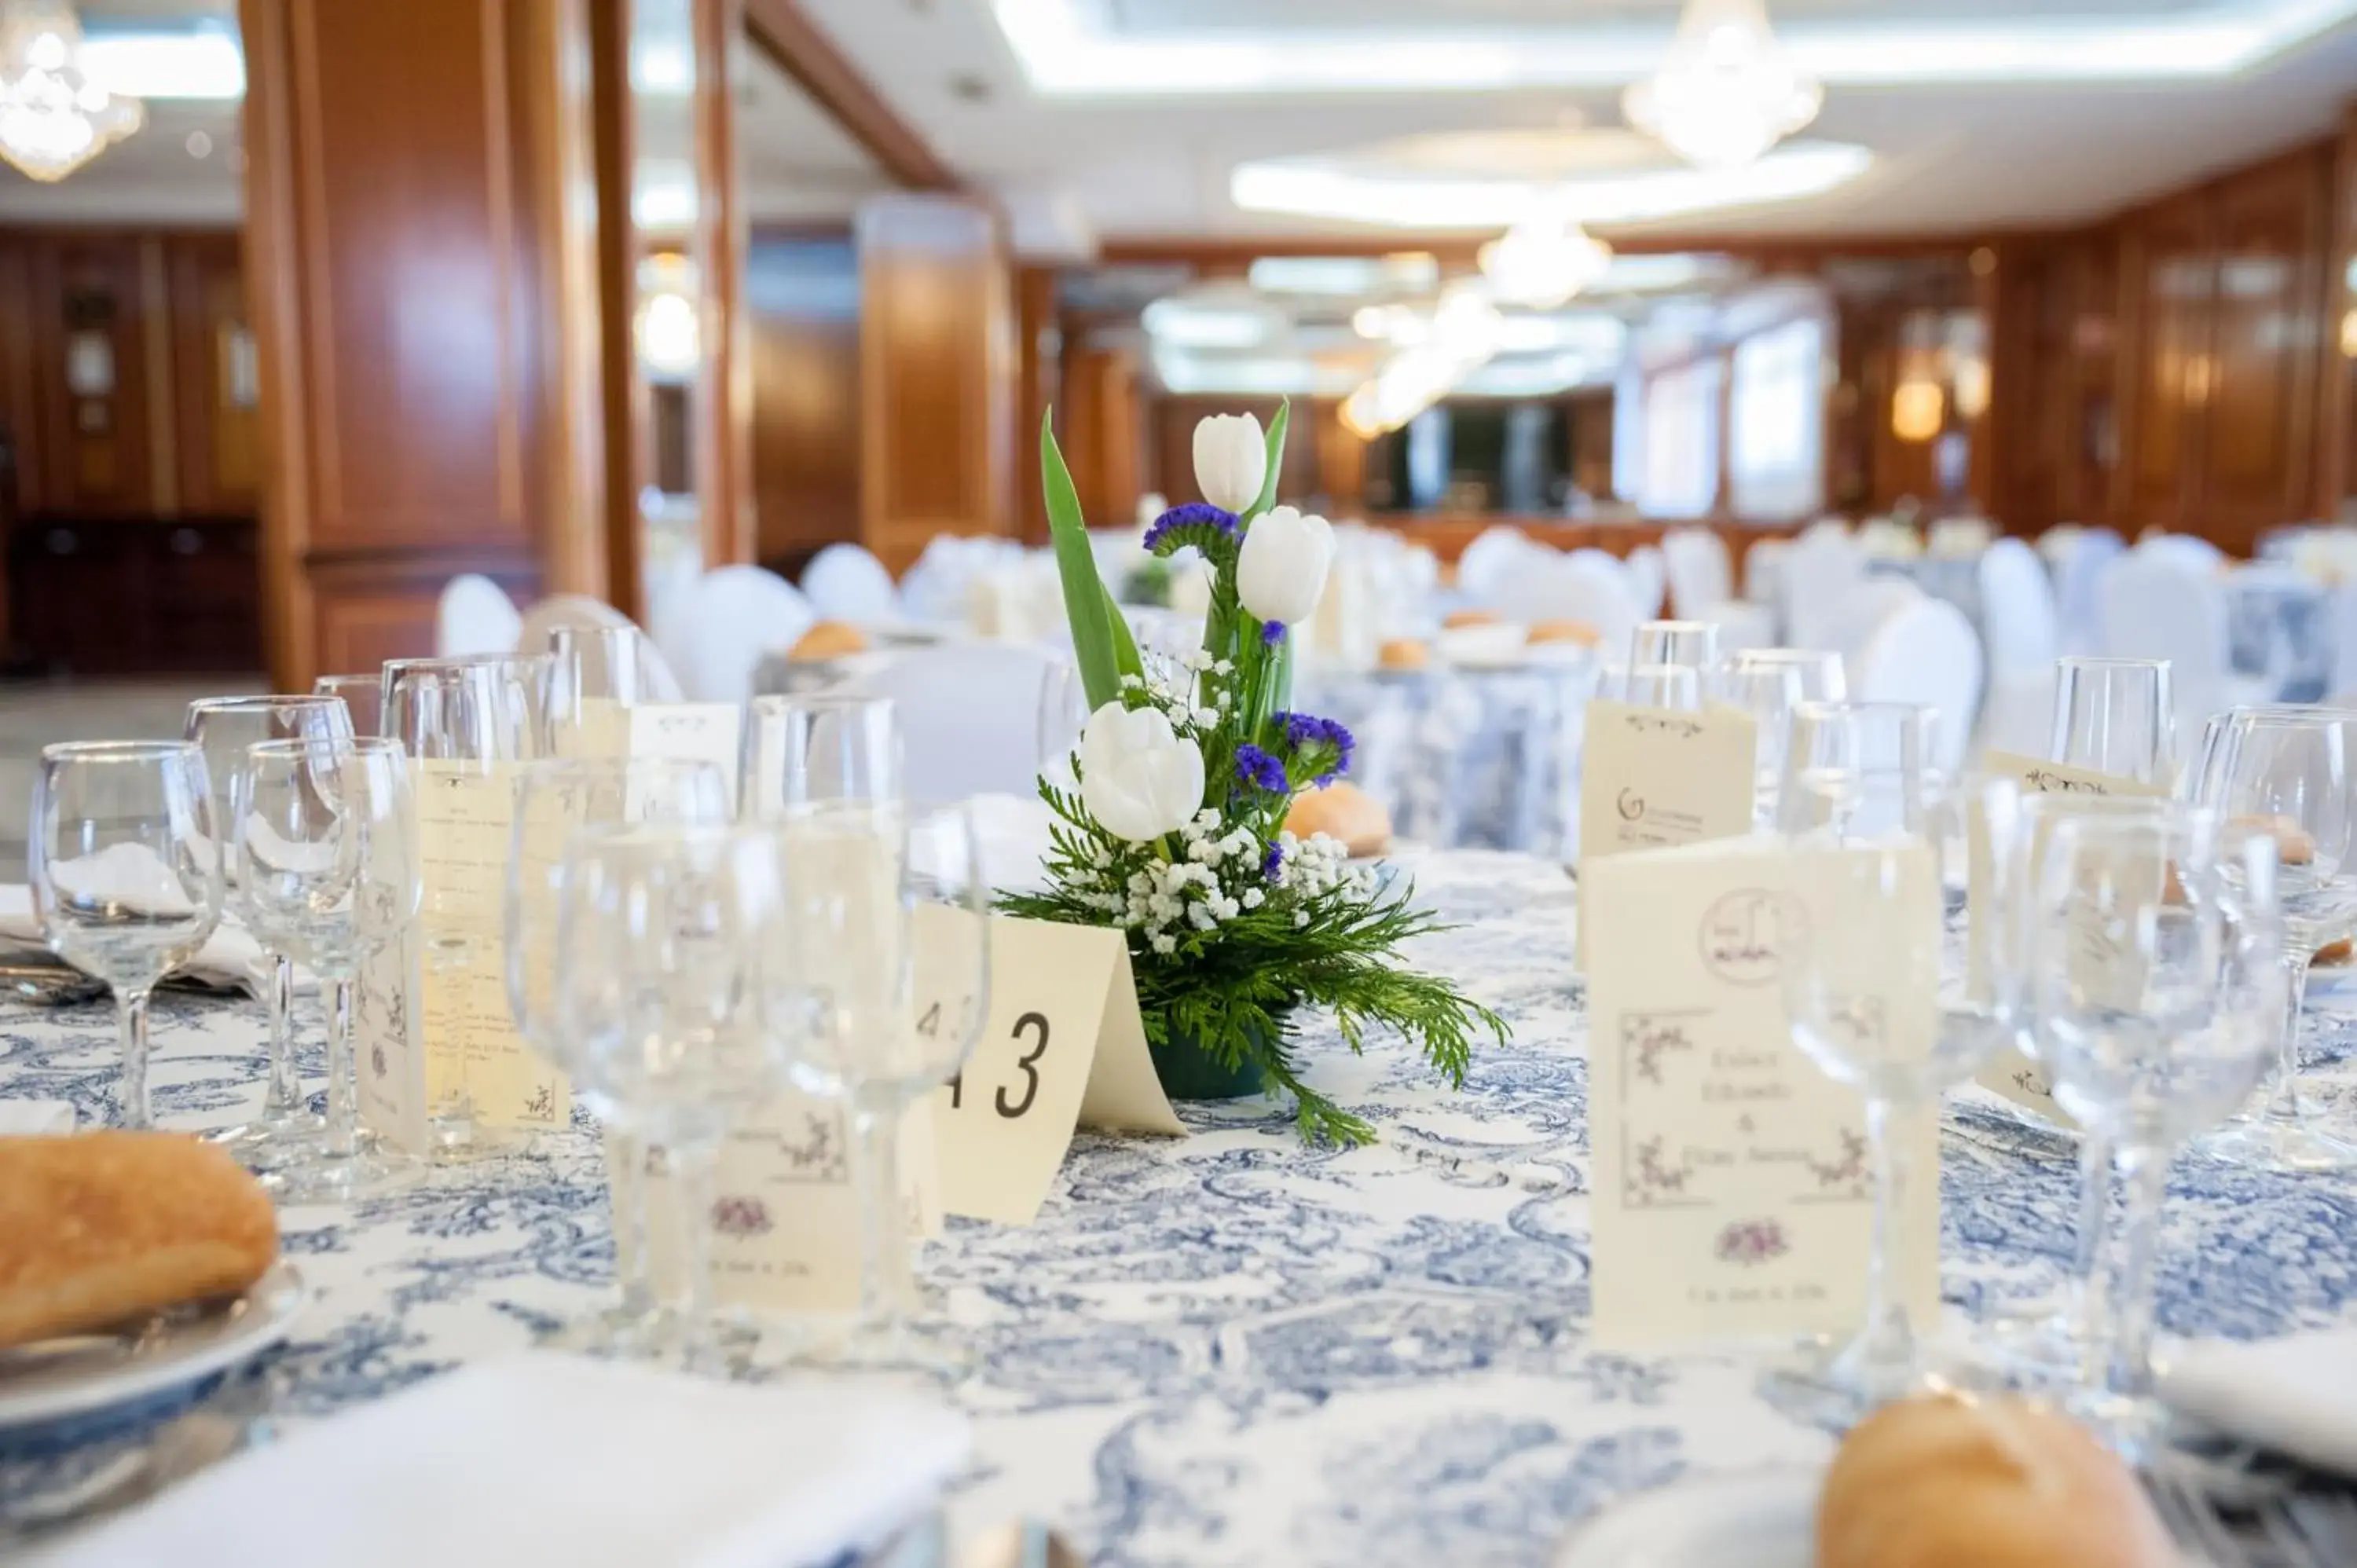 Banquet/Function facilities, Banquet Facilities in Hotel Aida